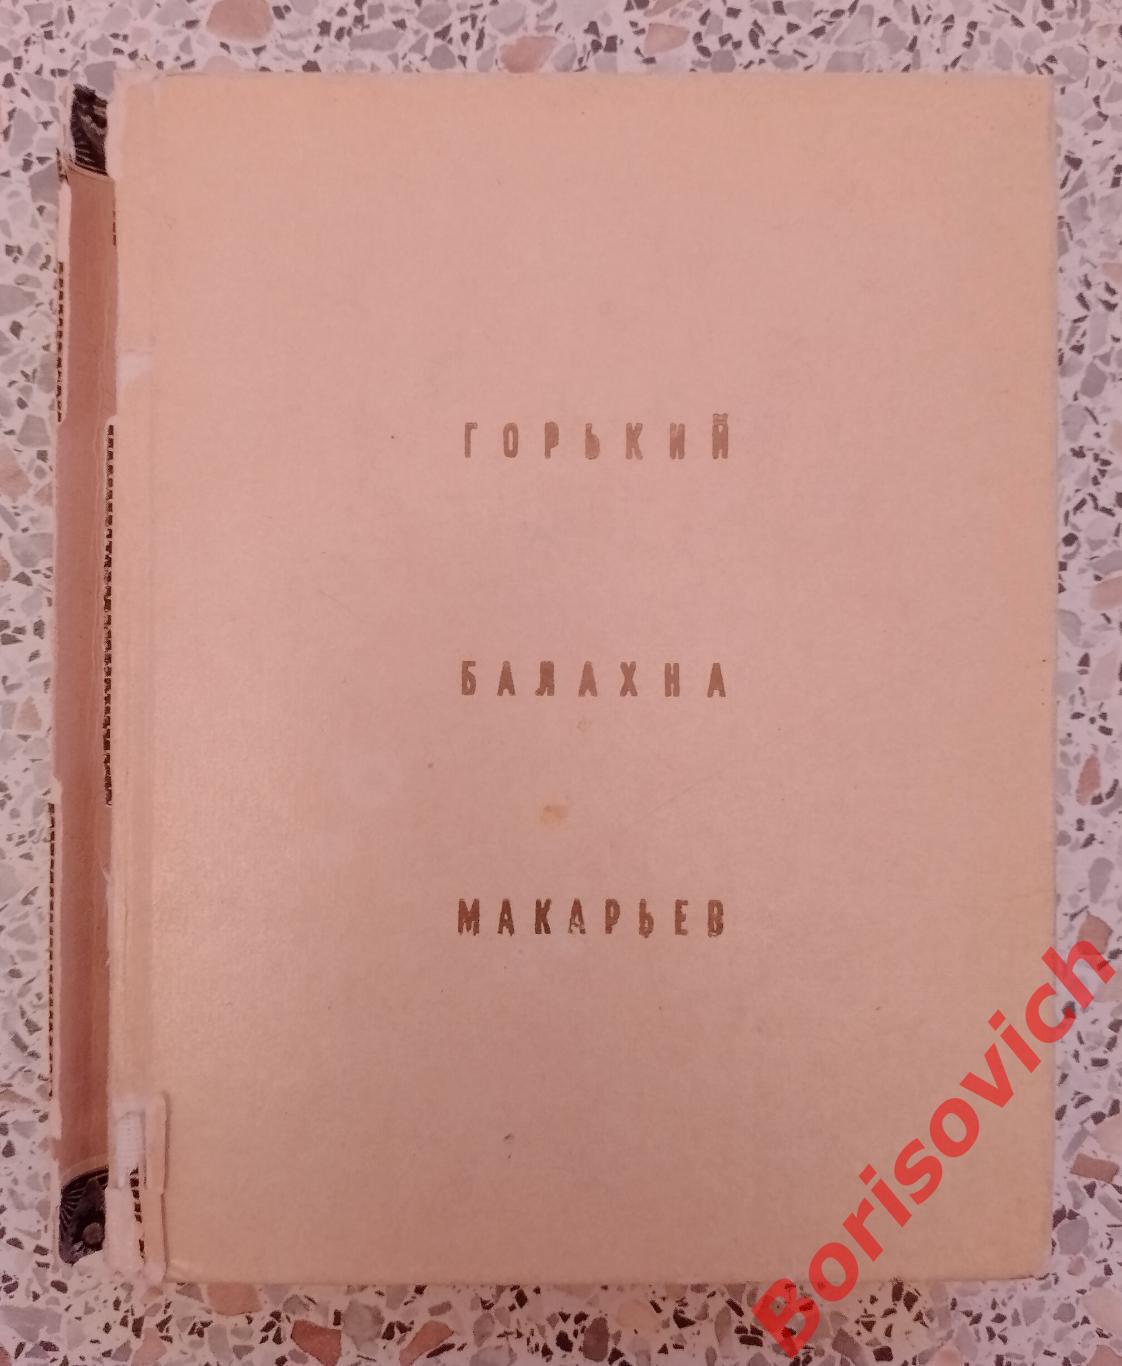 Горький Балахна Макарьев 1969 г 224 стр с иллюстрациями